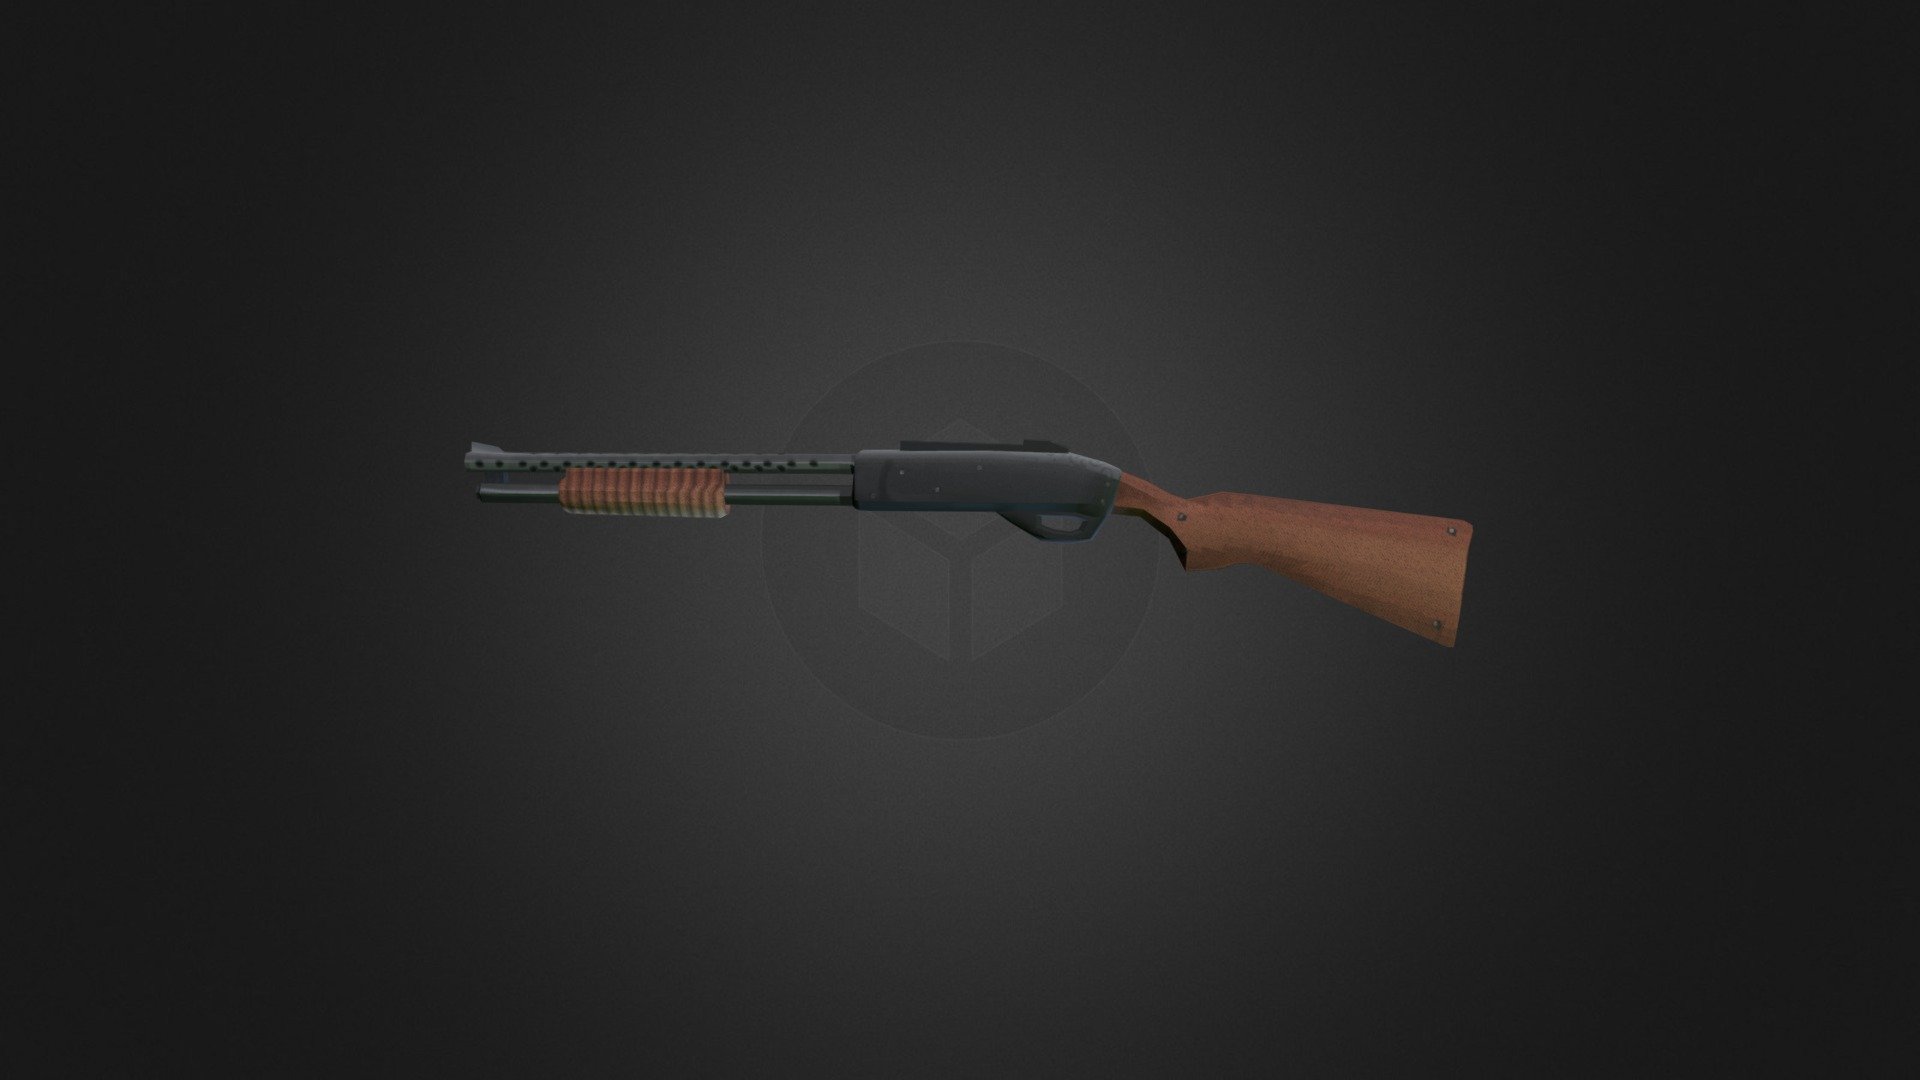 Retro FPS PS1 Style Shotgun inspired by DUSK - Retro FPS PS1 Style Shotgun - 3D model by crispyghouls 3d model